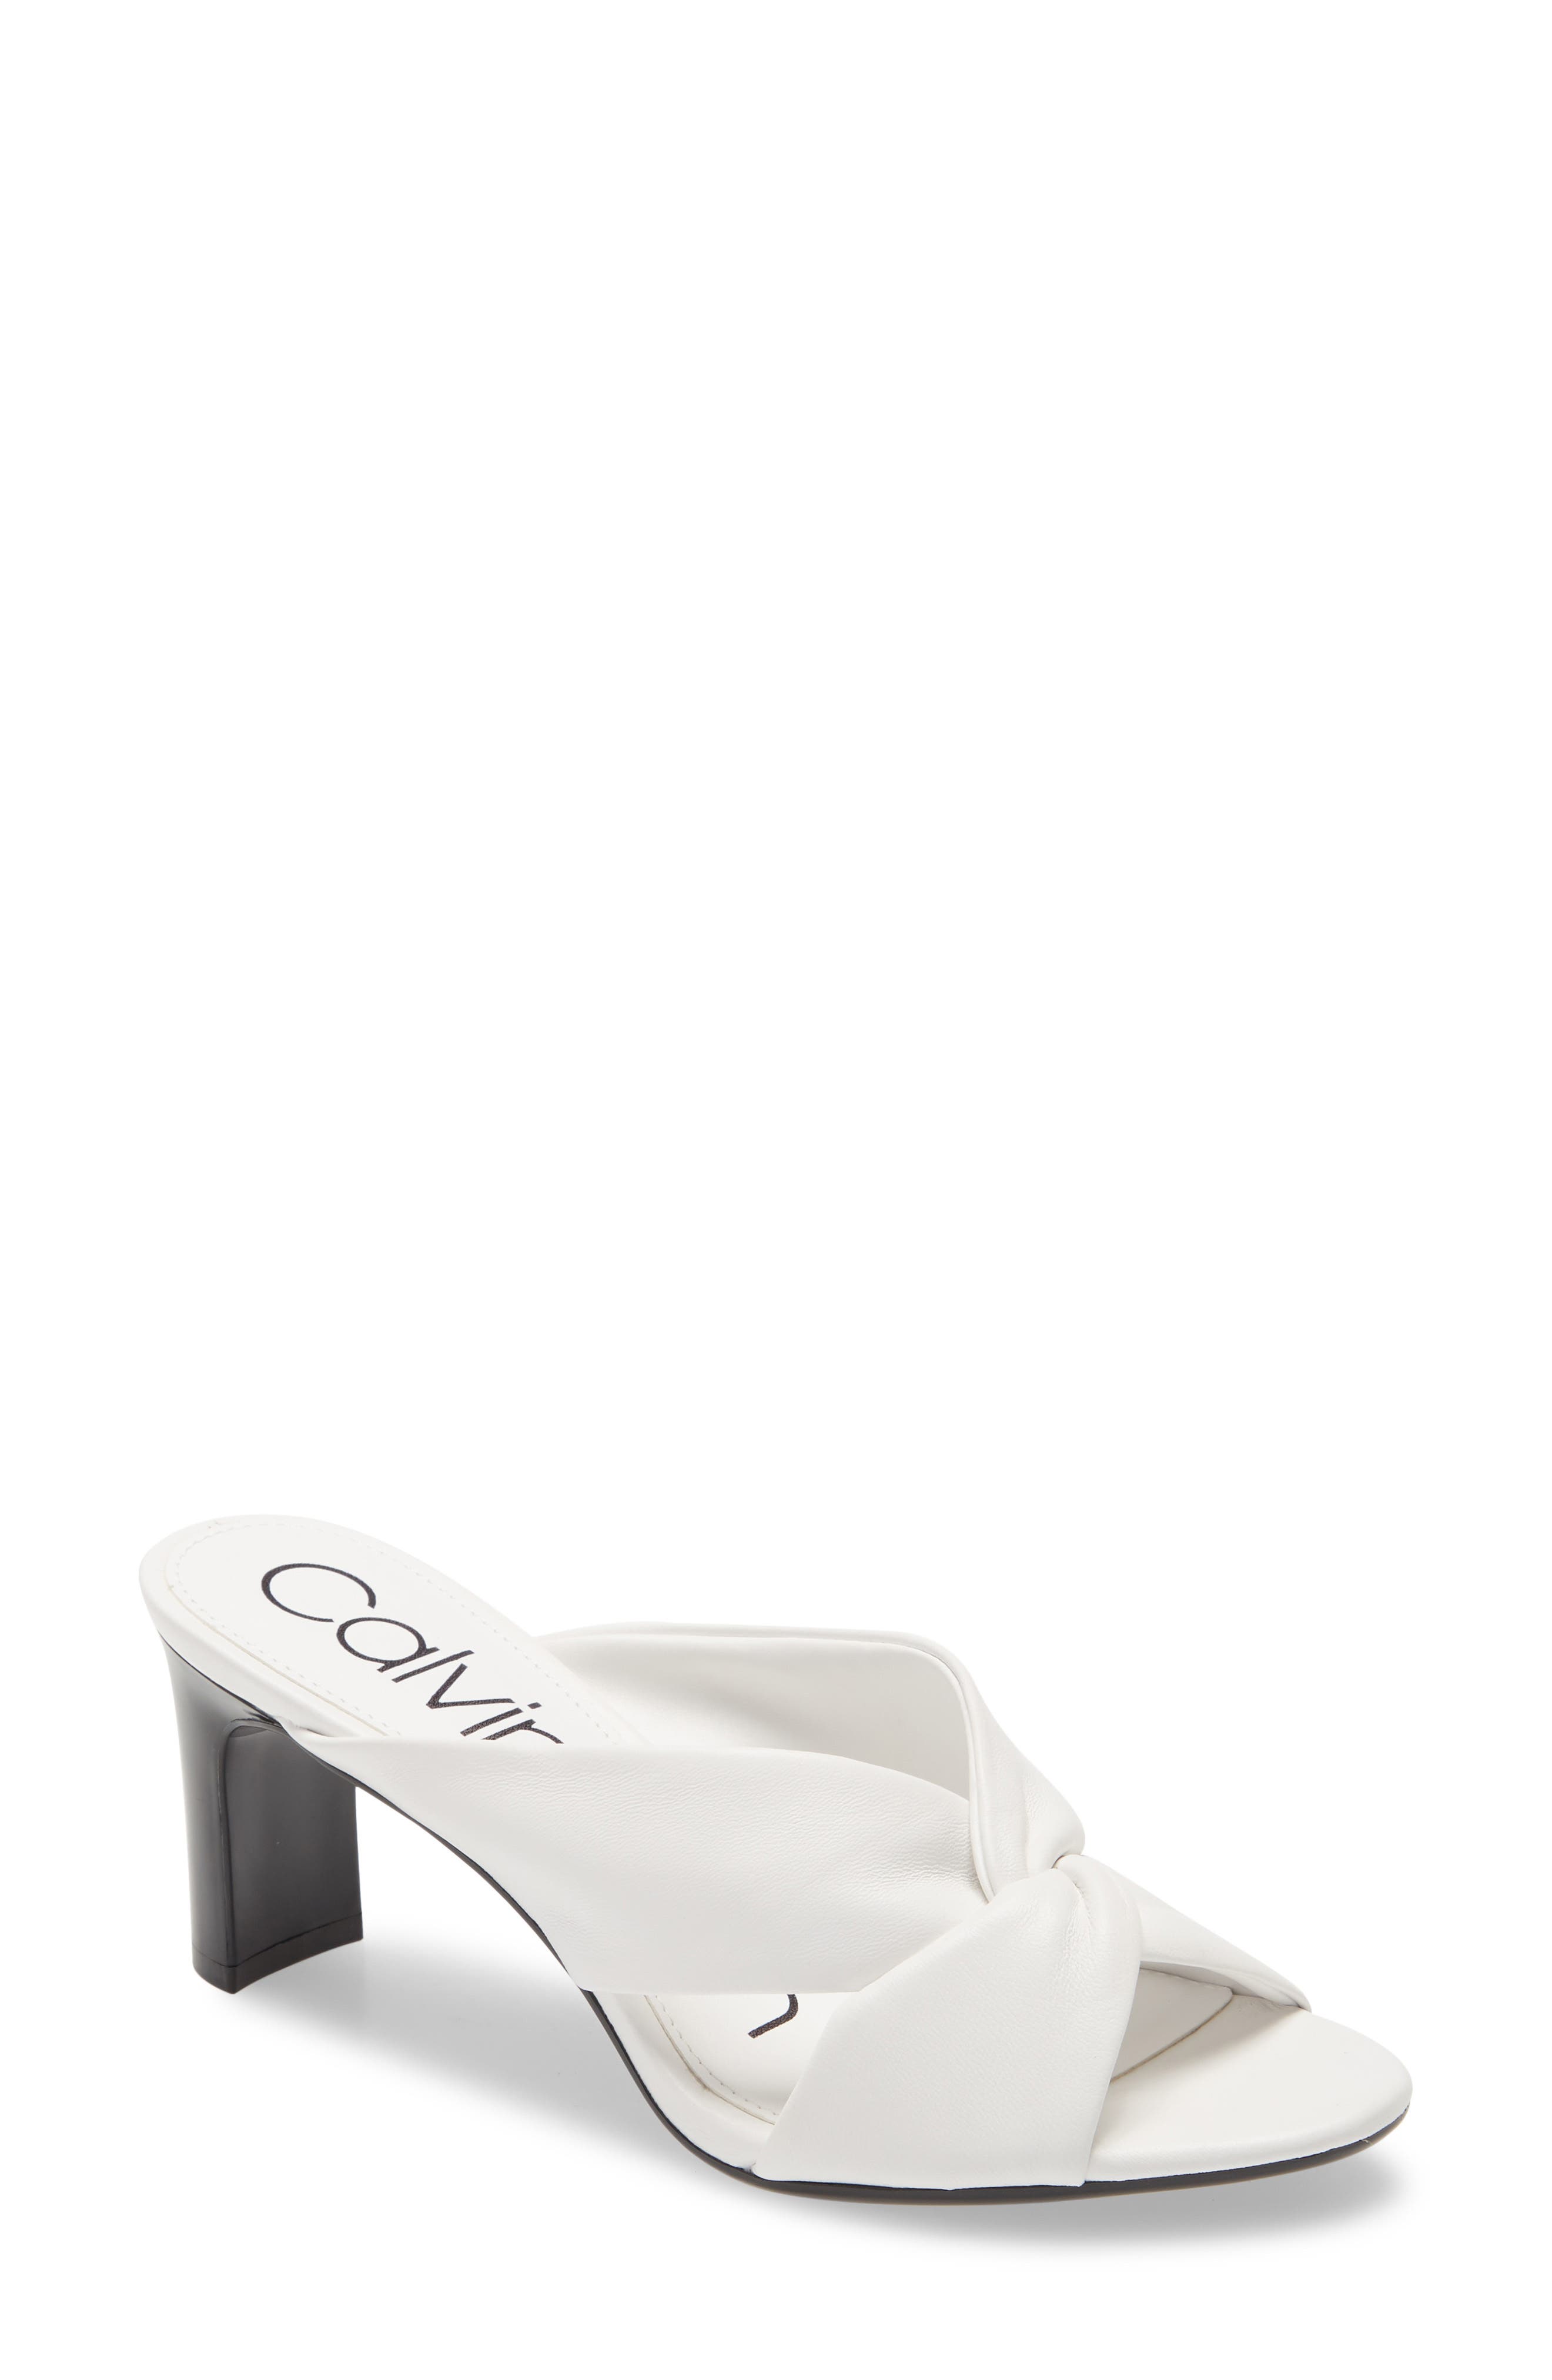 UPC 194060411316 product image for Women's Calvin Klein Omarion Sandal, Size 9.5 M - White | upcitemdb.com